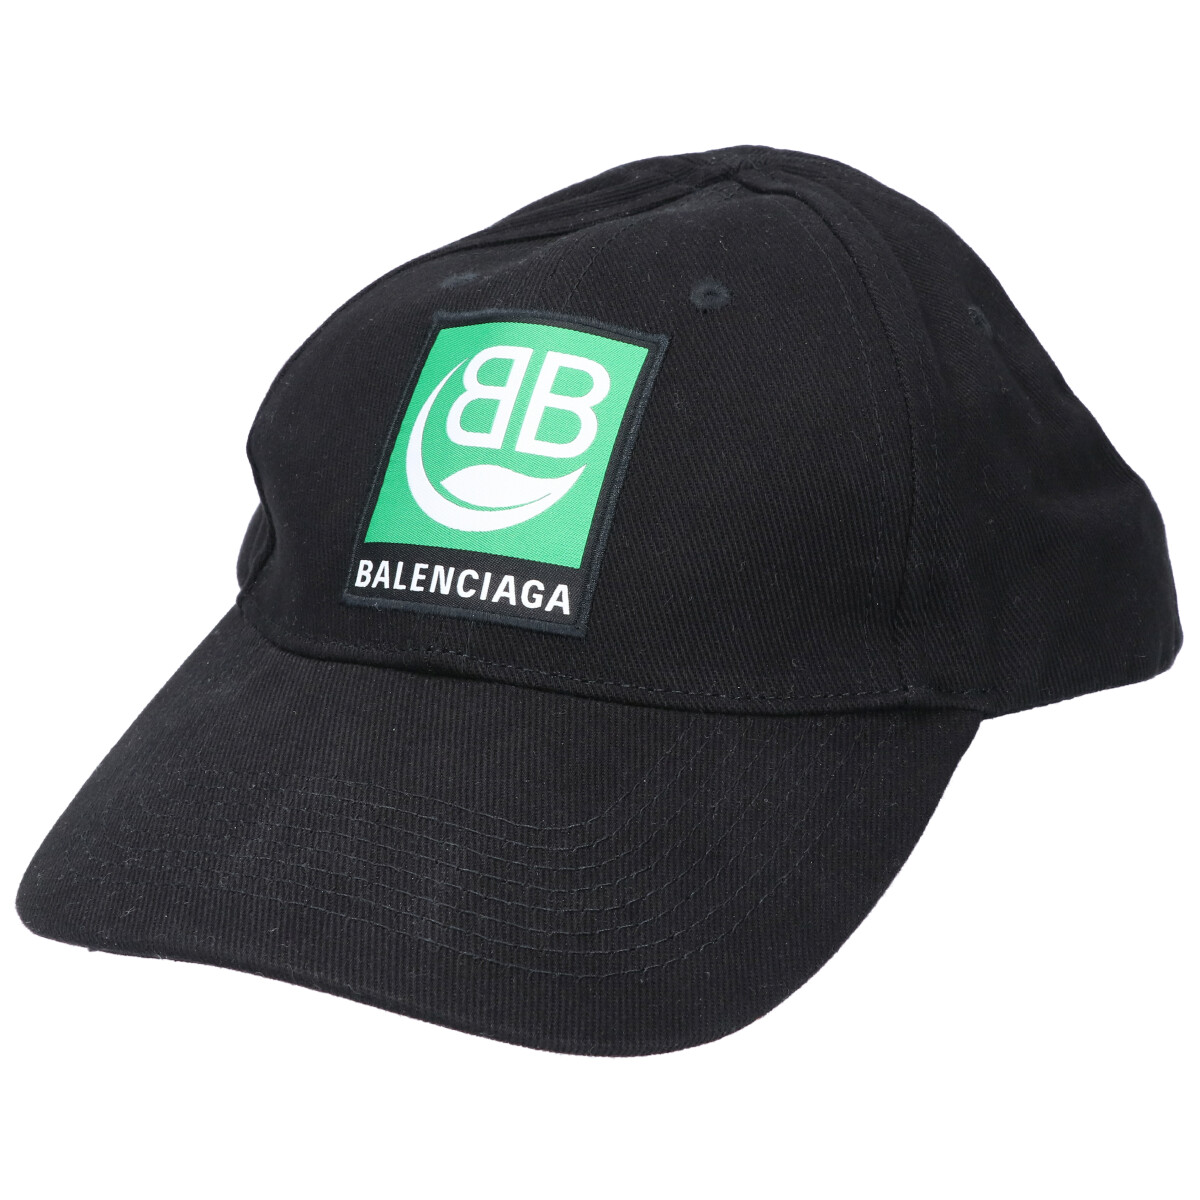 バレンシアガの20年 593188 410B2 1000 黒 BB グリーンロゴ ベースボールキャップの買取実績です。